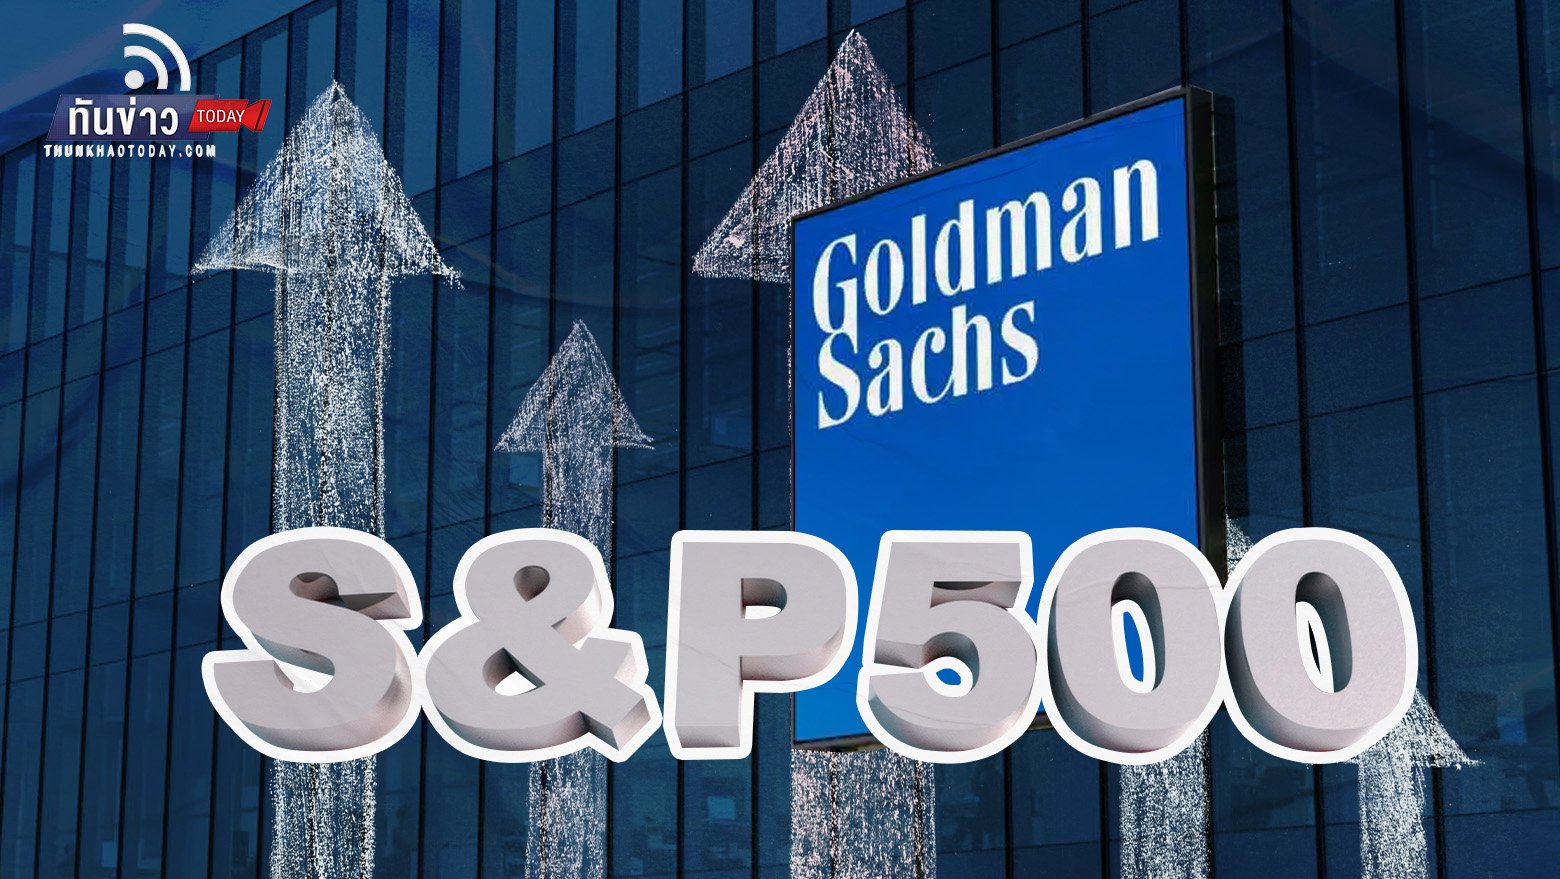 Goldman Sachs คาดดัชนี S&P 500 พุ่งแตะ 5,100 ปีหน้า